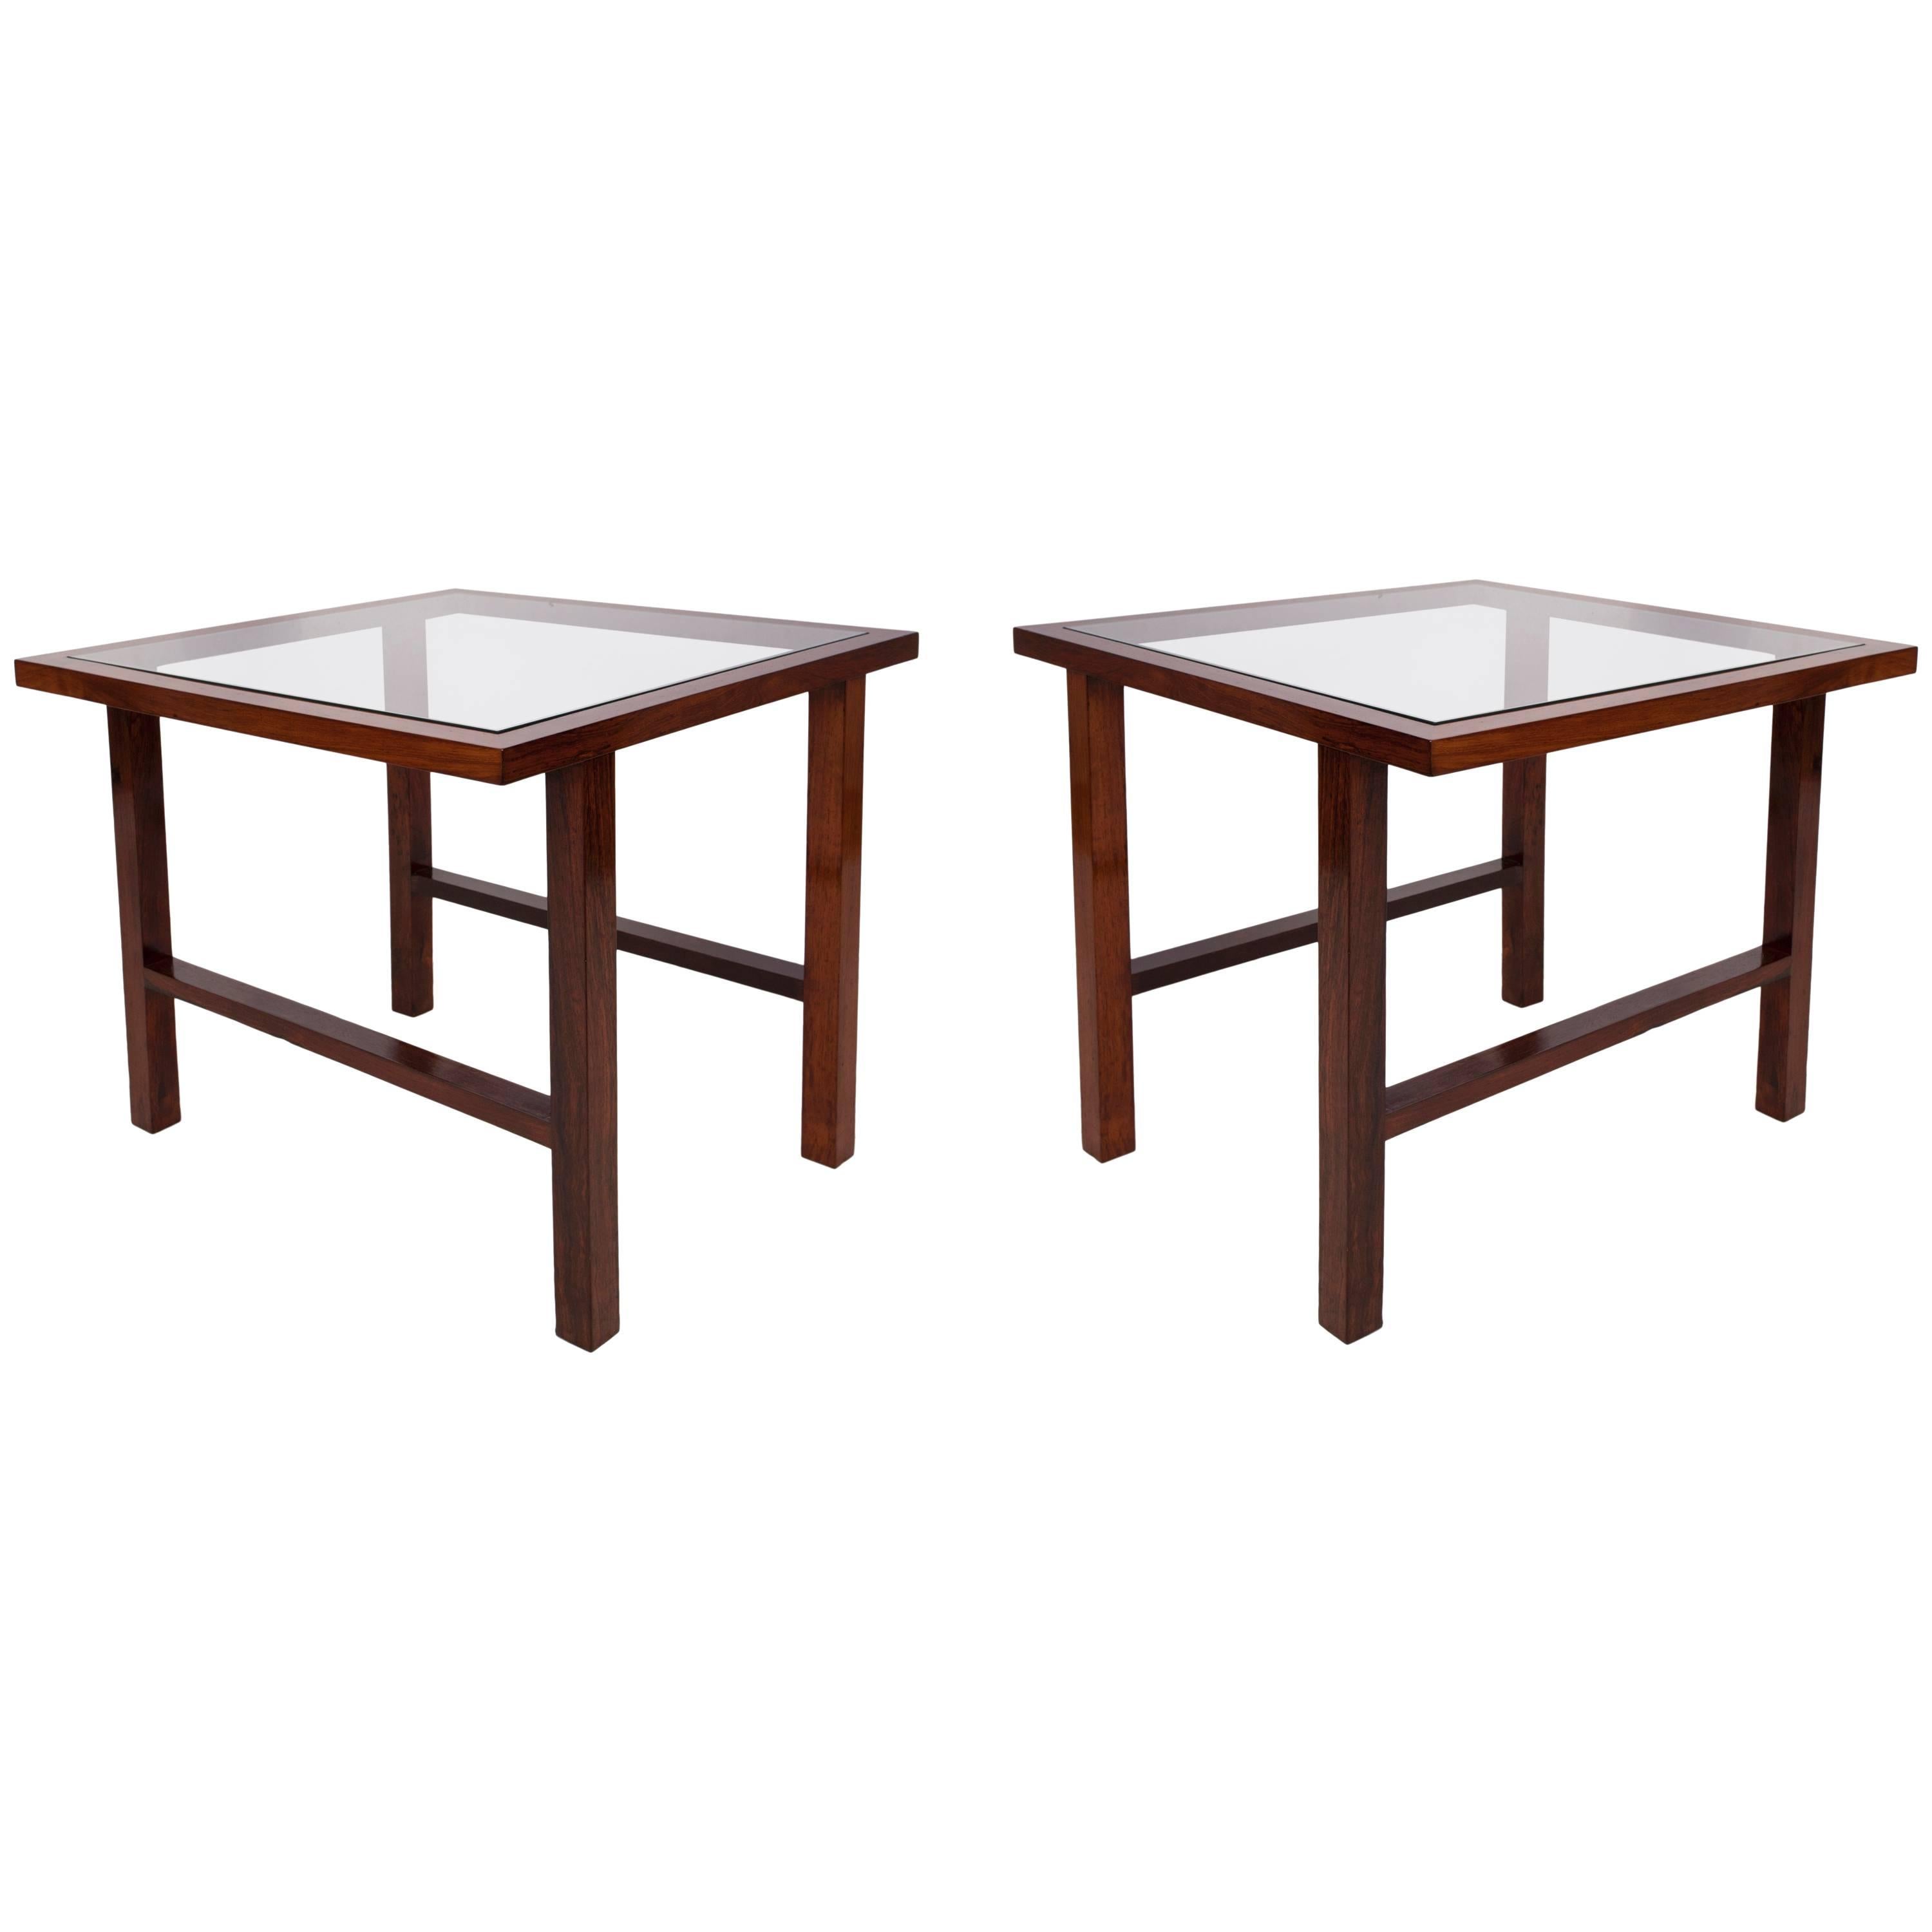 Pair of Branco & Preto Glass Top Side Tables in Caviuna